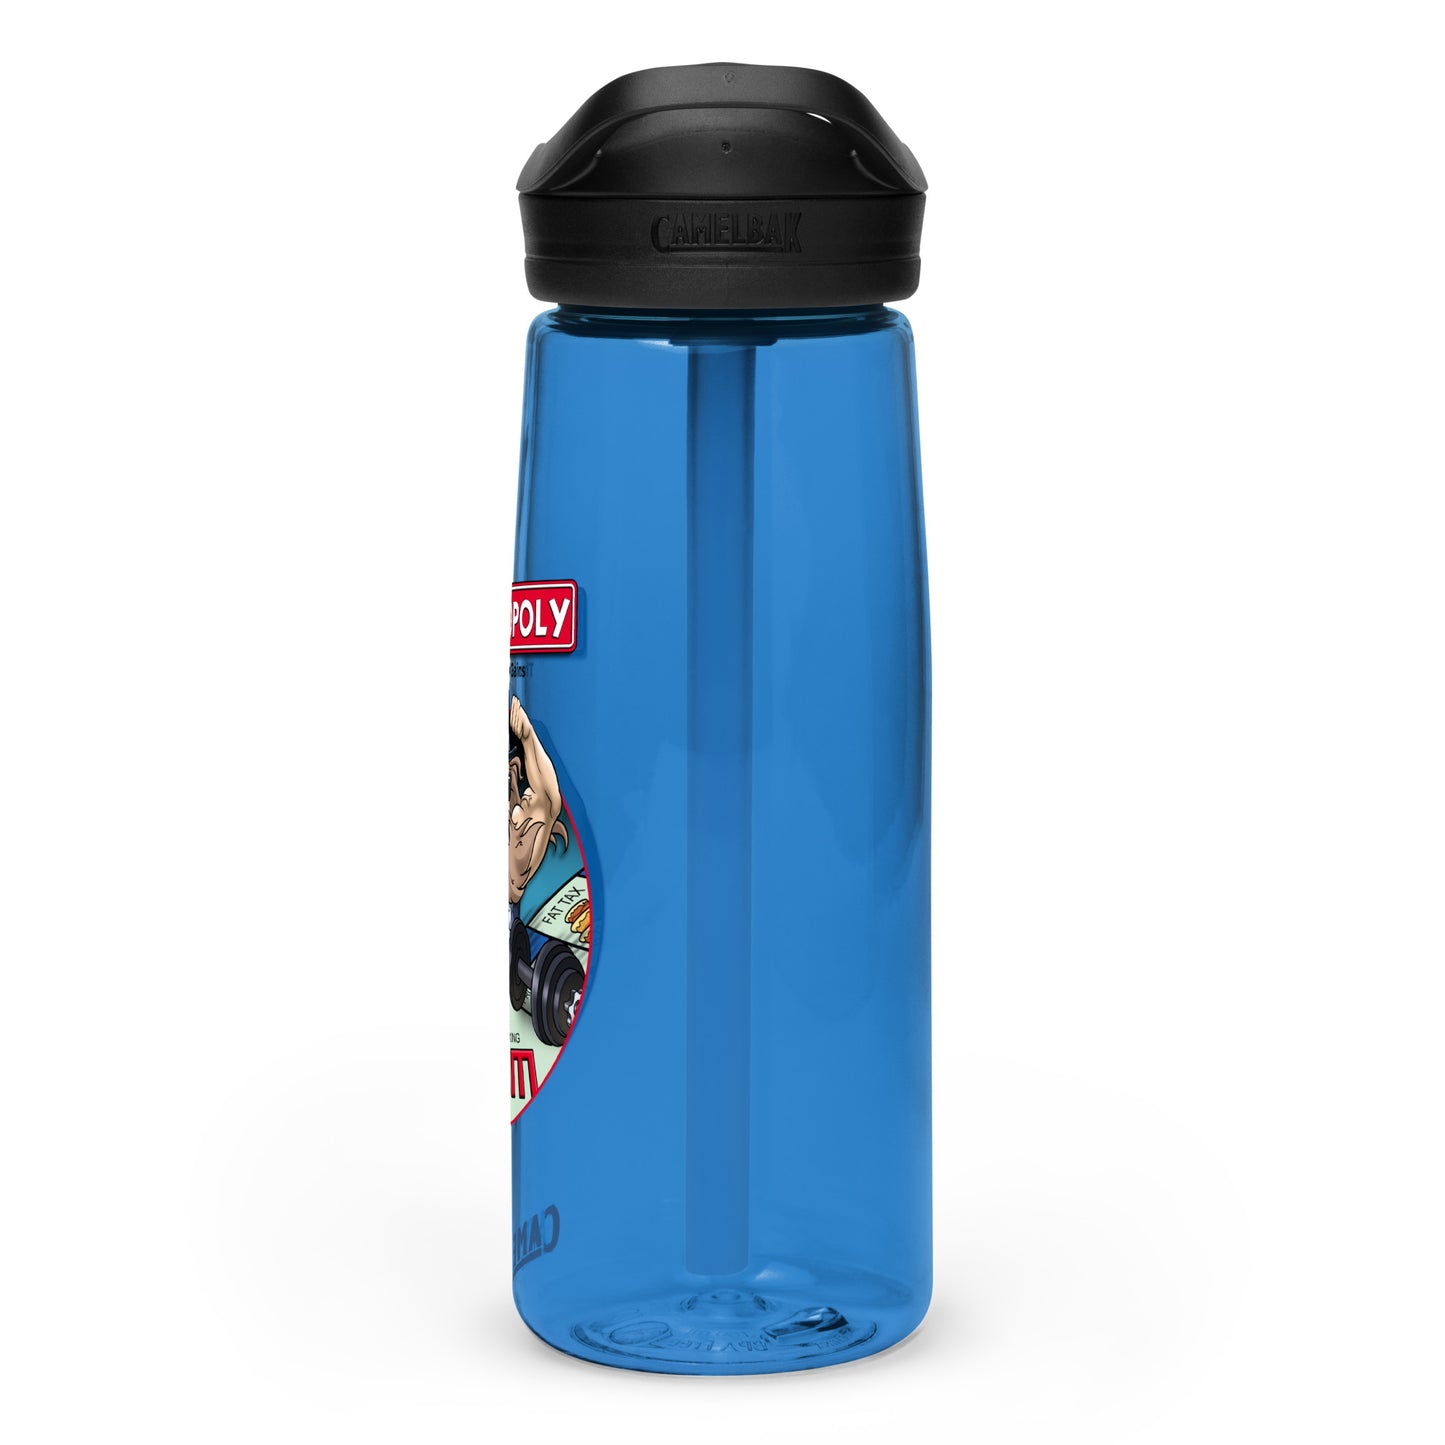 Swoleopoly Water Bottle